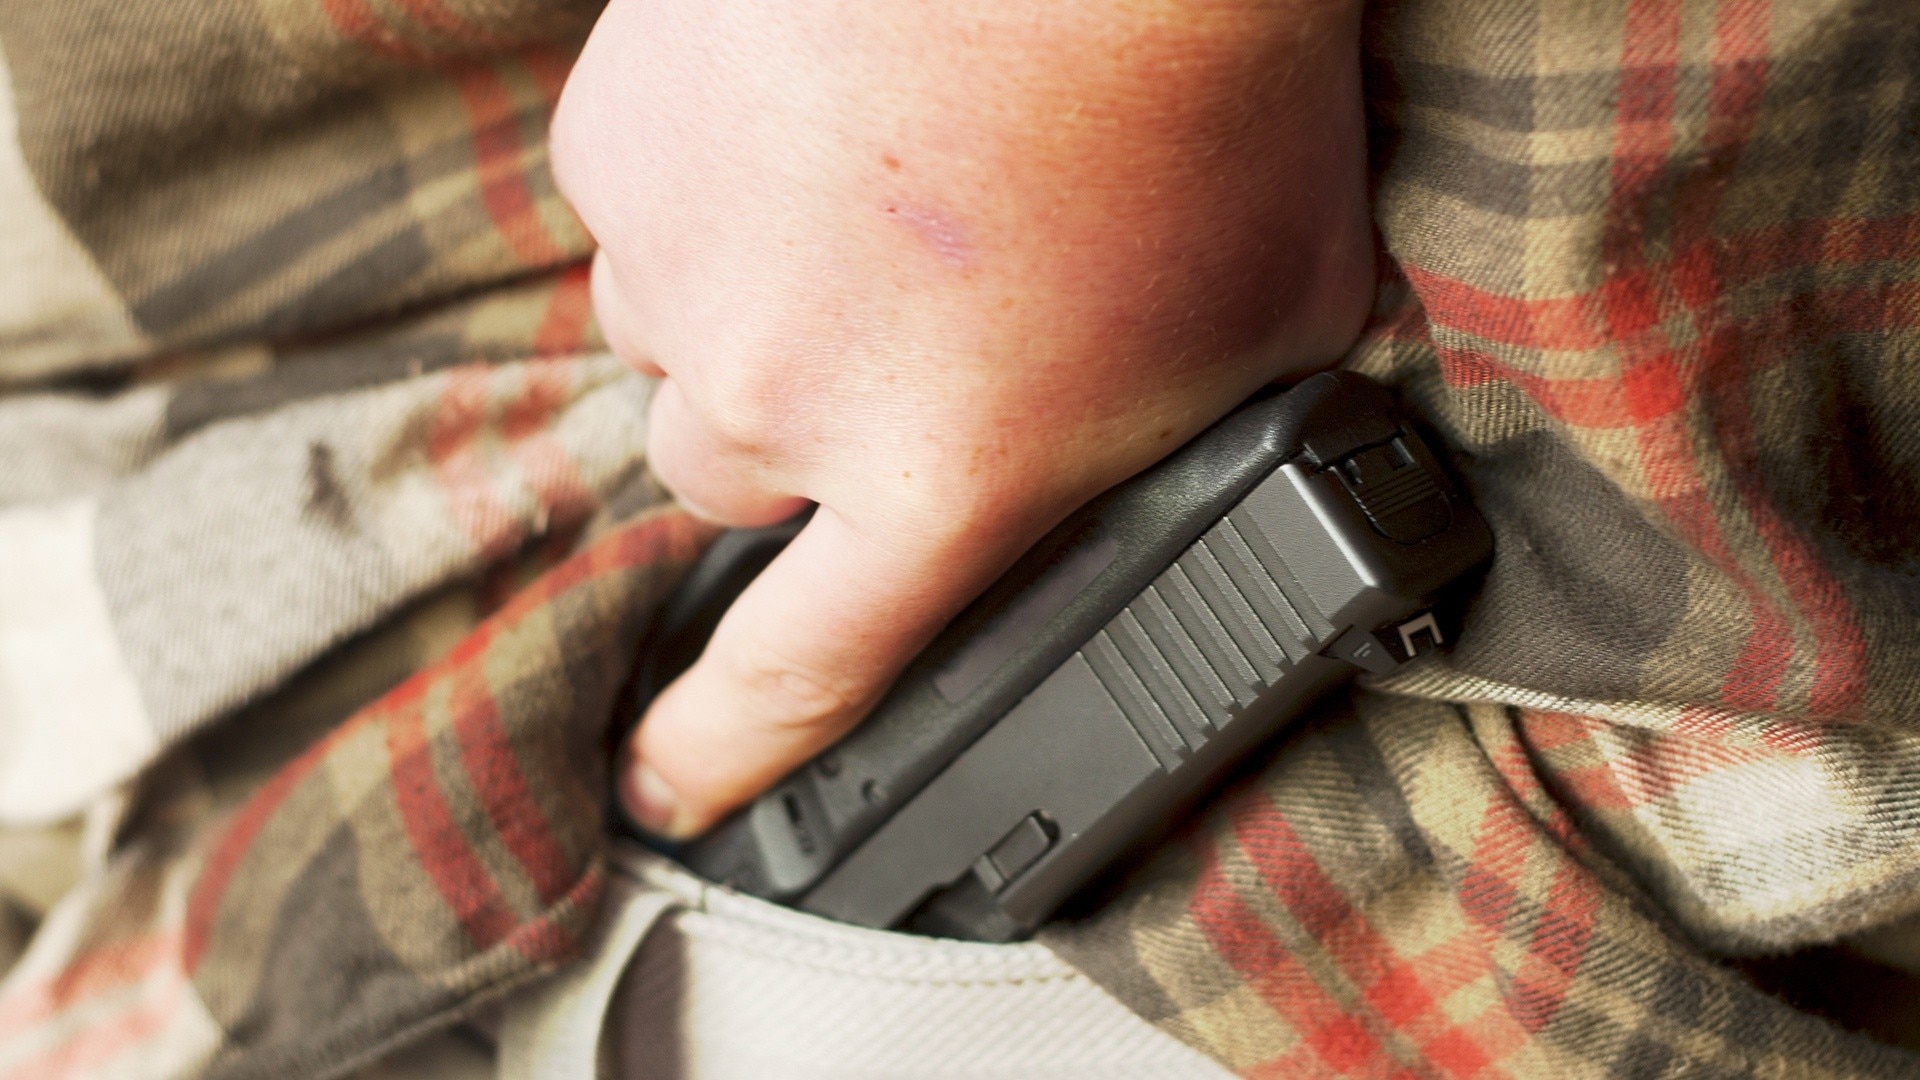 Watch hoy Día Highlight Entra en vigor una nueva ley para portar armas